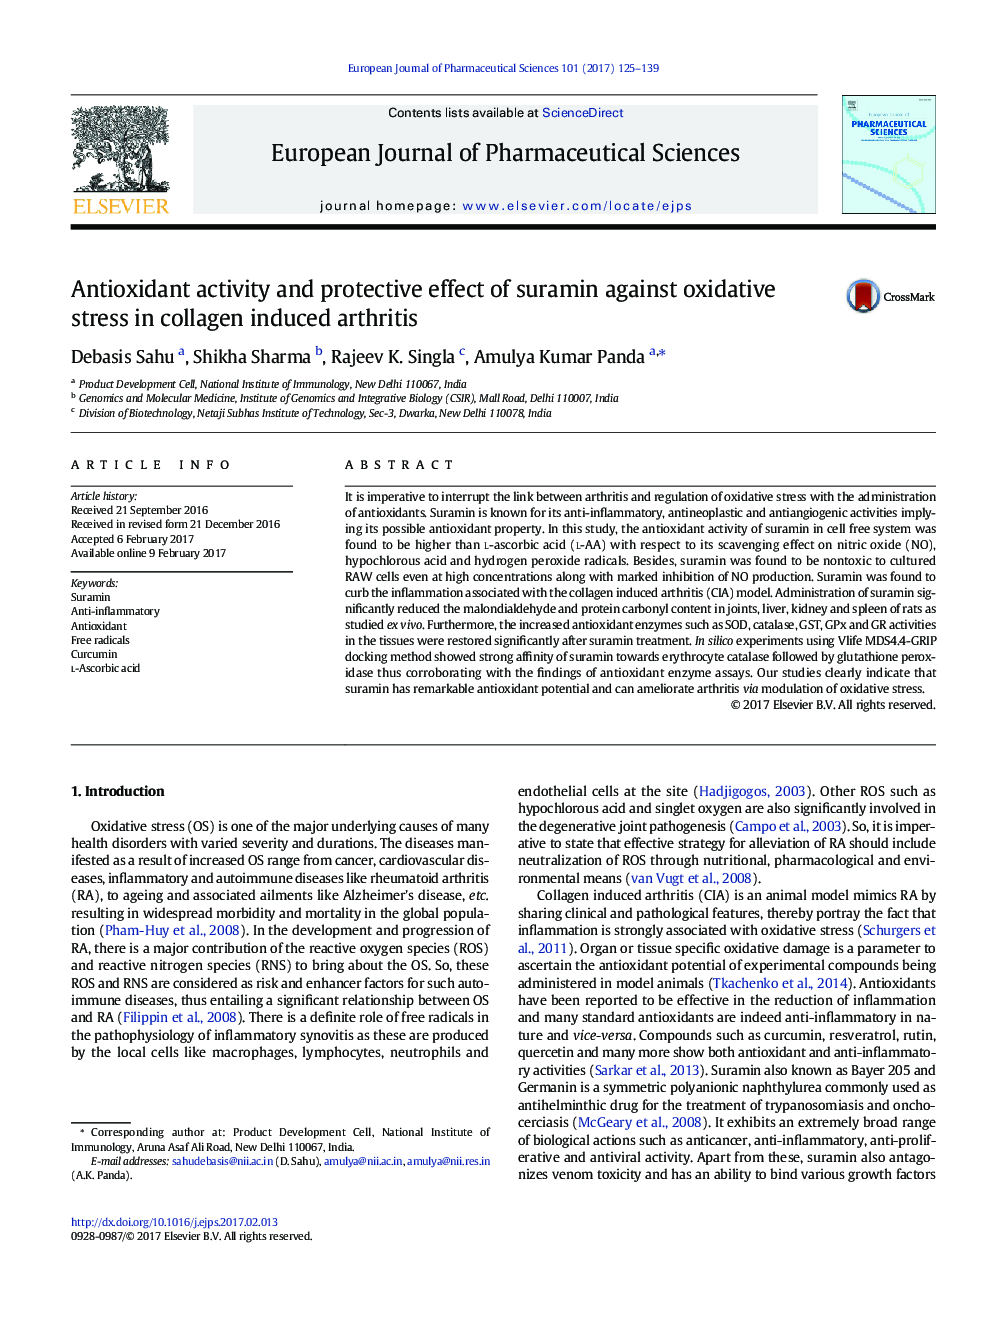 فعالیت آنتیاکسیدانی و اثر محافظتی سارامین در برابر استرس اکسیداتیو در آرتریت ناشی از کلاژن 